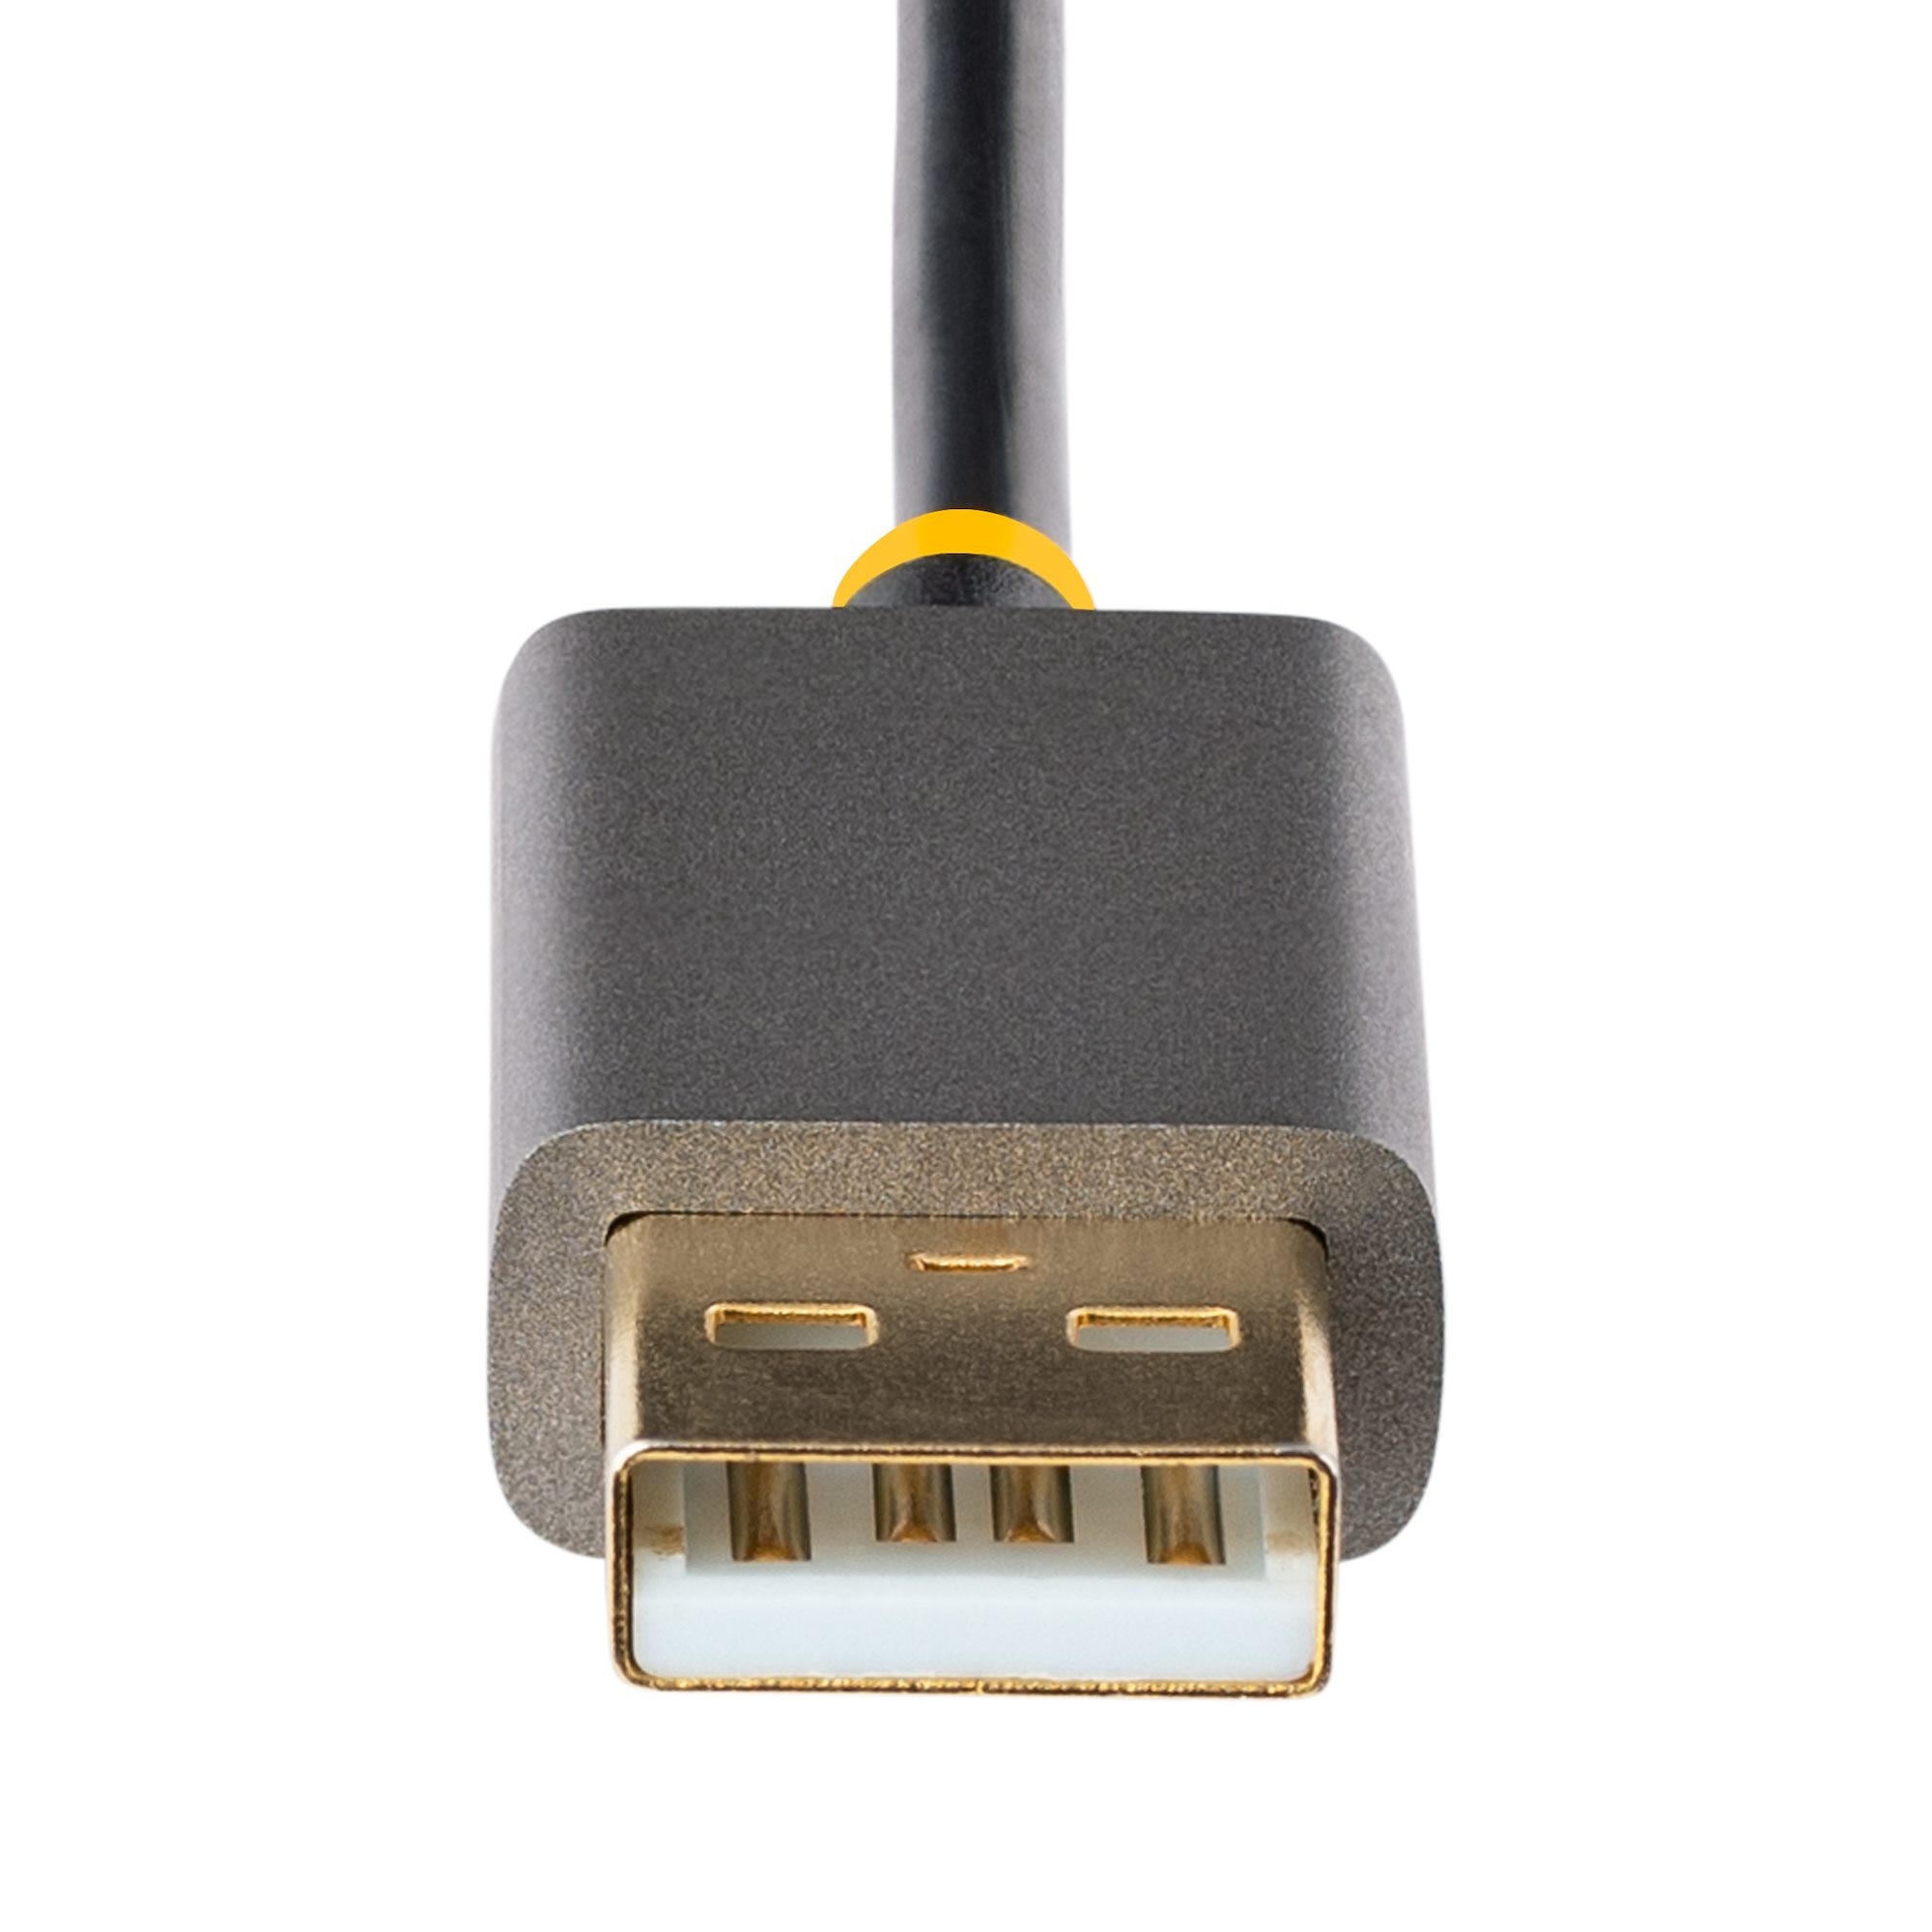 30 cm HDMI- till DisplayPort-kabeladapter, aktiv 4K 60 Hz HDMI 2.0 till DP  1.2-konverterare, HDR, USB-bussdriven, HDMI-källa till DisplayPort-skärm